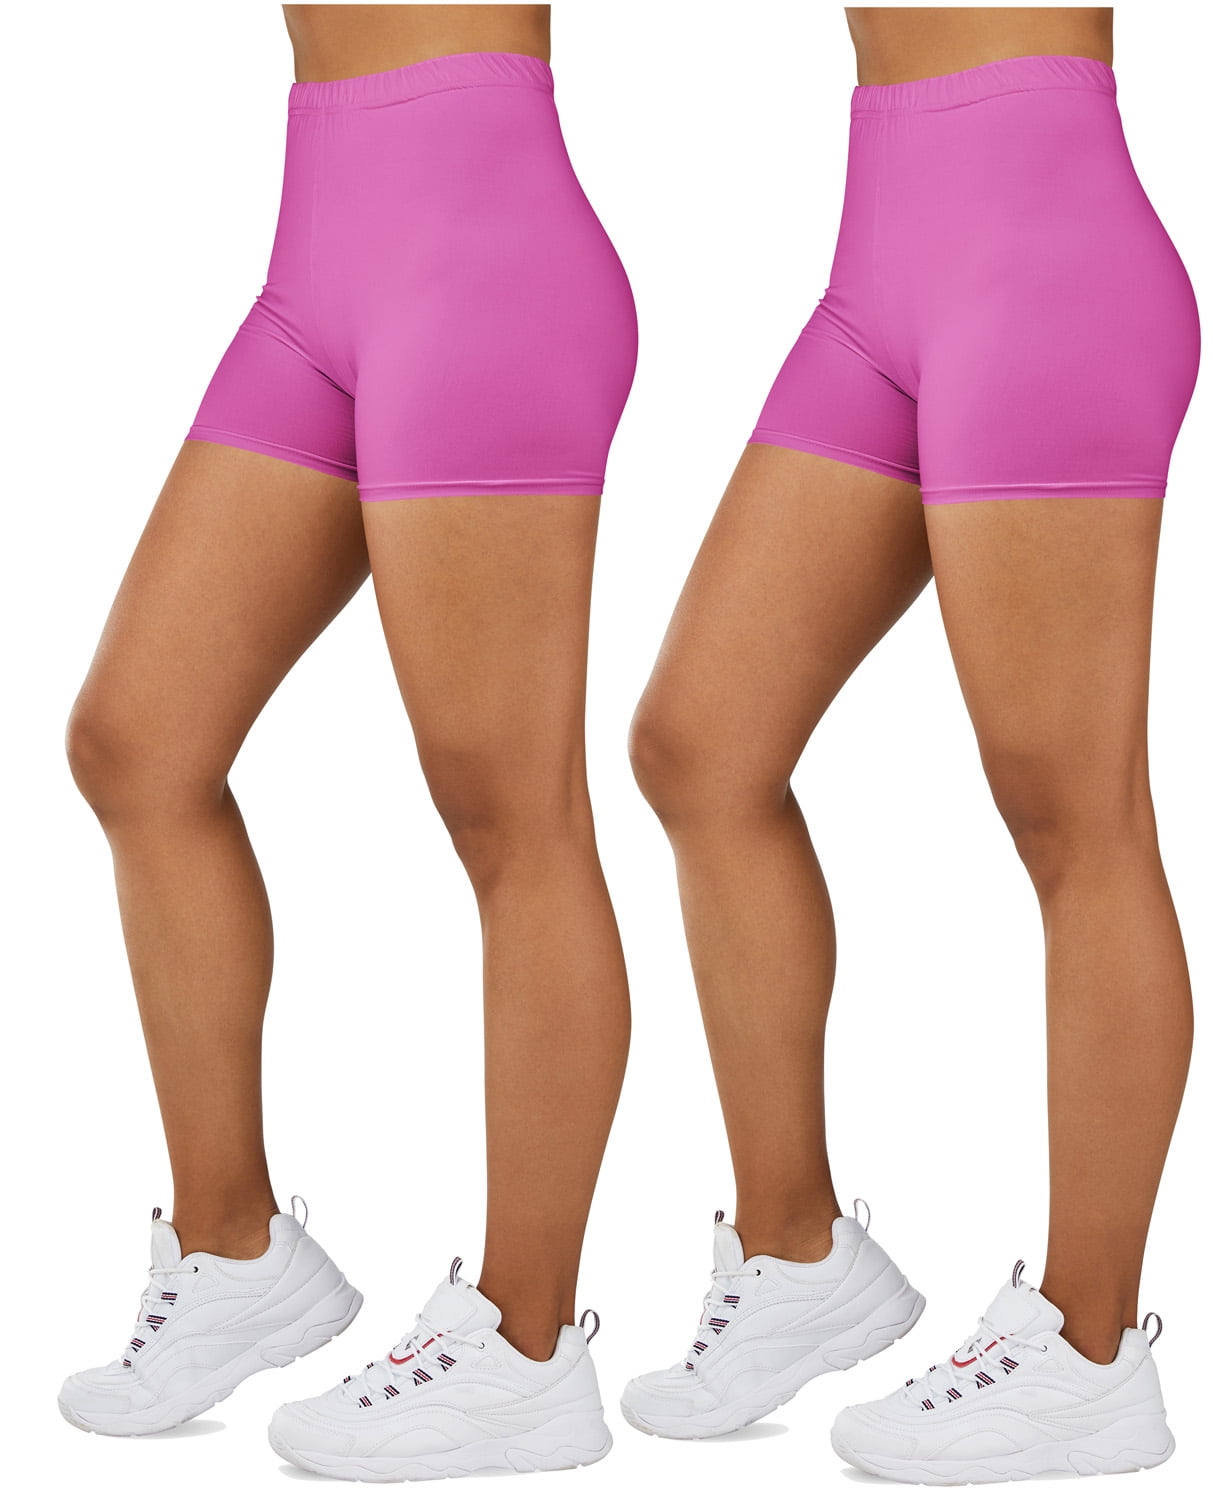 Gilbin Ultra Soft High Waist Yoga Stretch Mini-Bike Shorts Leggings